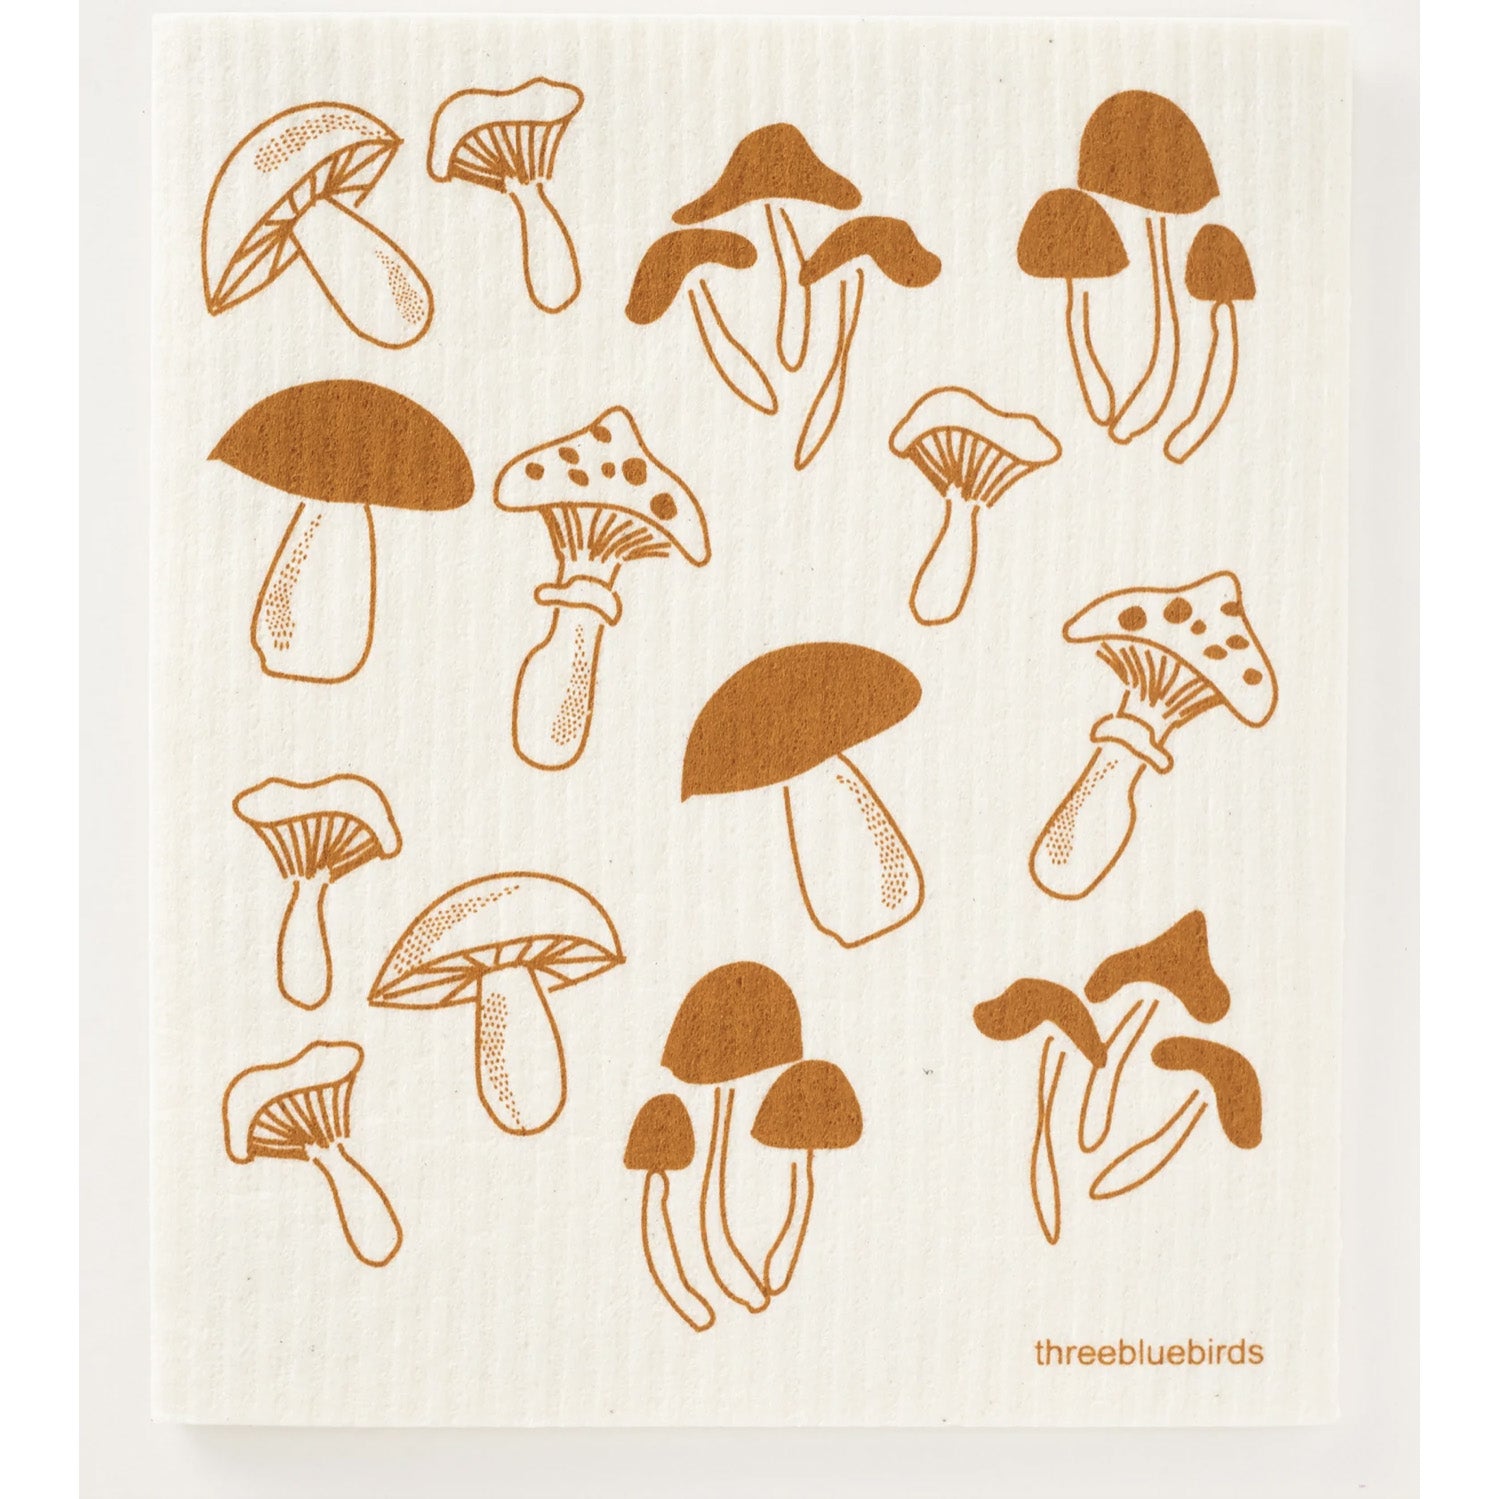 Swedish Dishcloth - Fungi, Brown Mushrooms